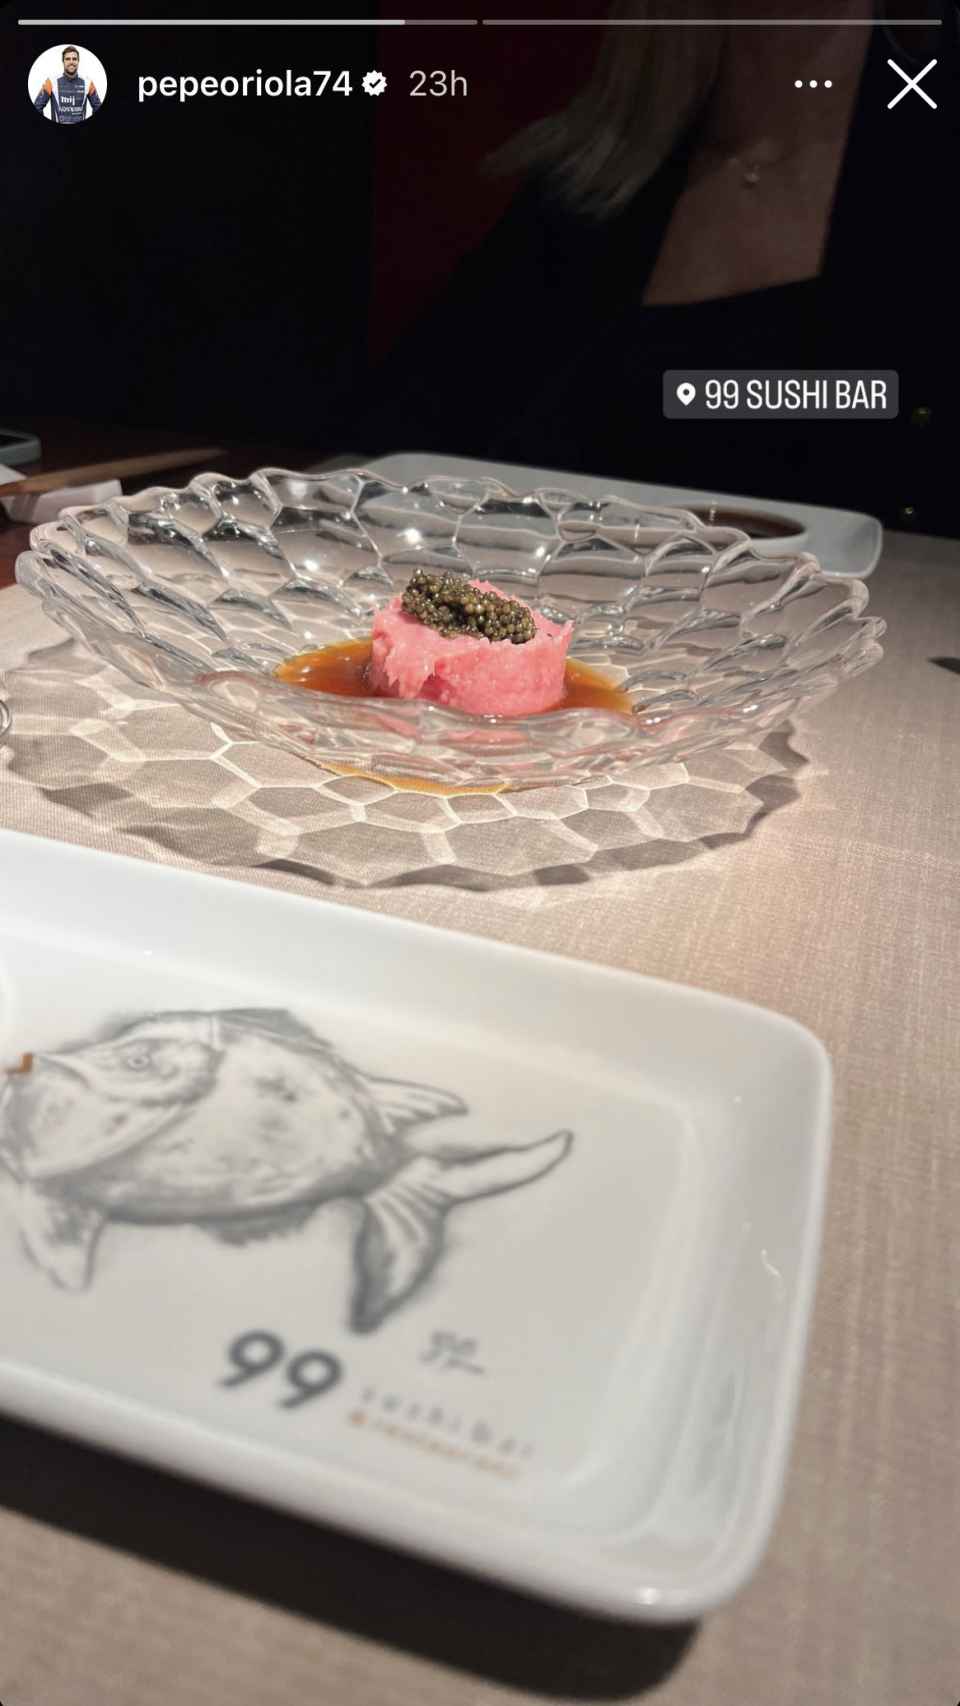 Pepe Oriola compartió en Instagram la ubicación del restaurante en el que estaba cenando